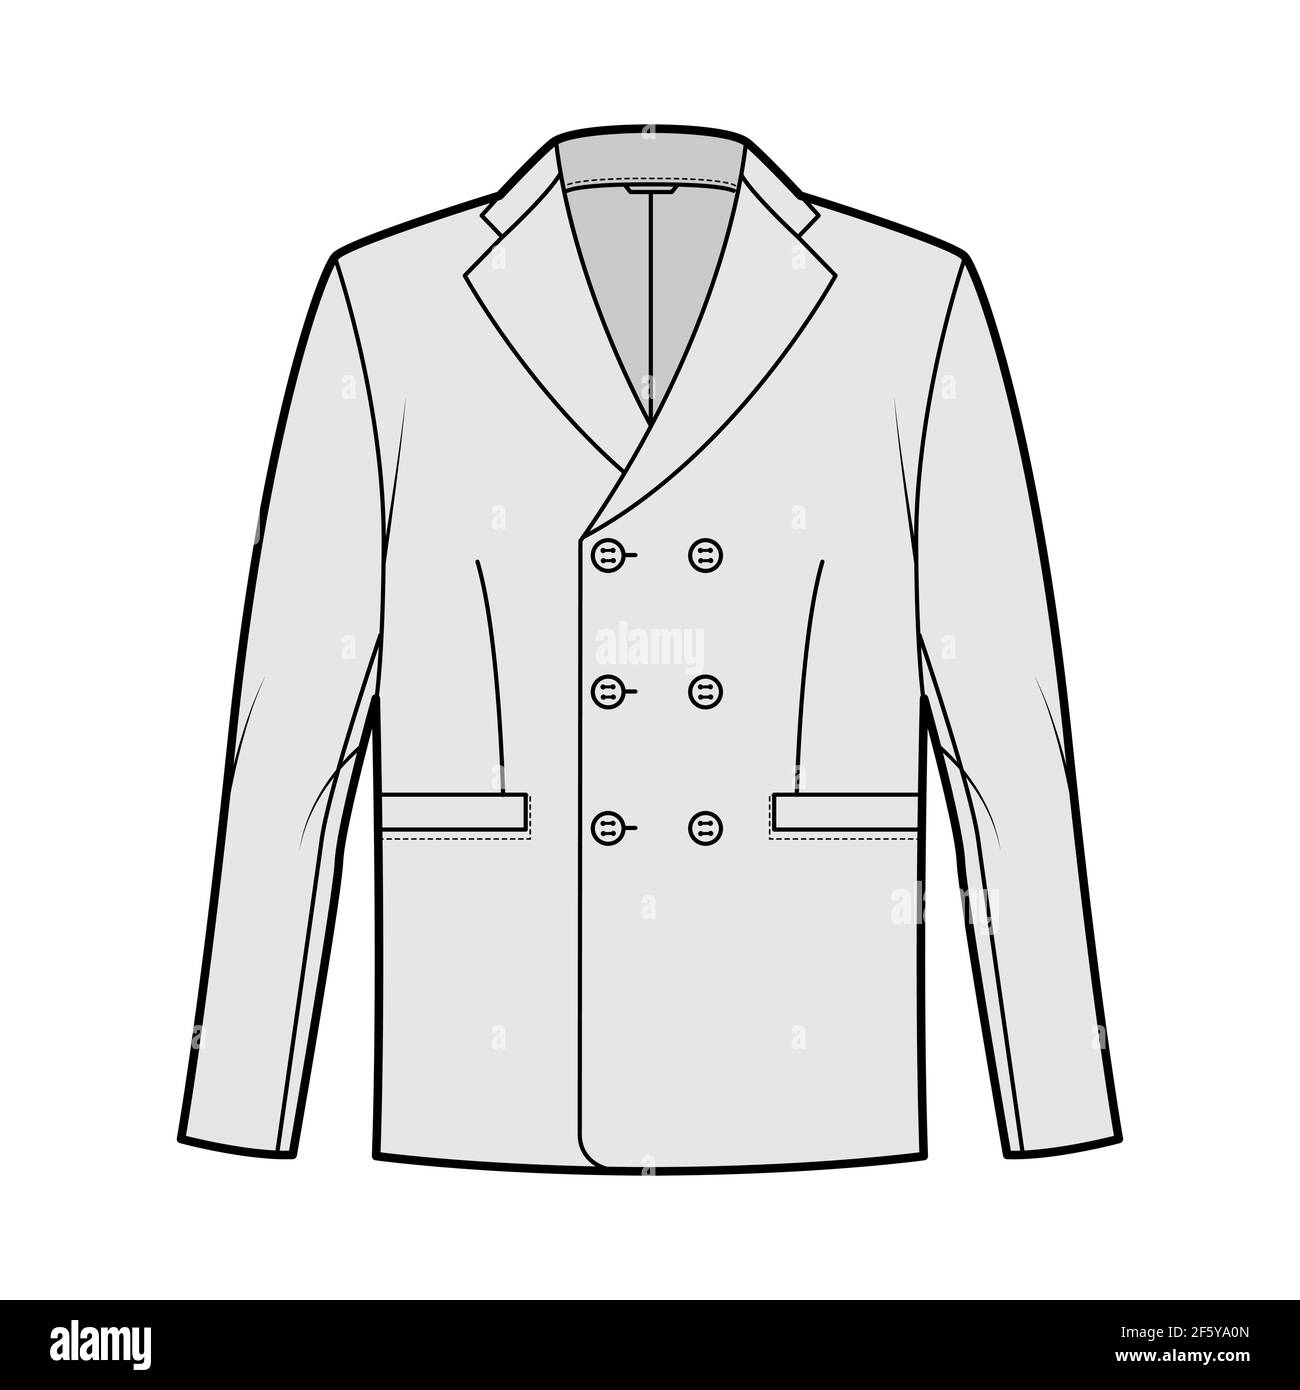 Chaqueta de doble pecho traje ilustración técnica de moda con manga larga,  cuello de solapa con muesca, bolsillos con ribete. Plantilla de abrigo  plano en la parte delantera, estilo de color gris.